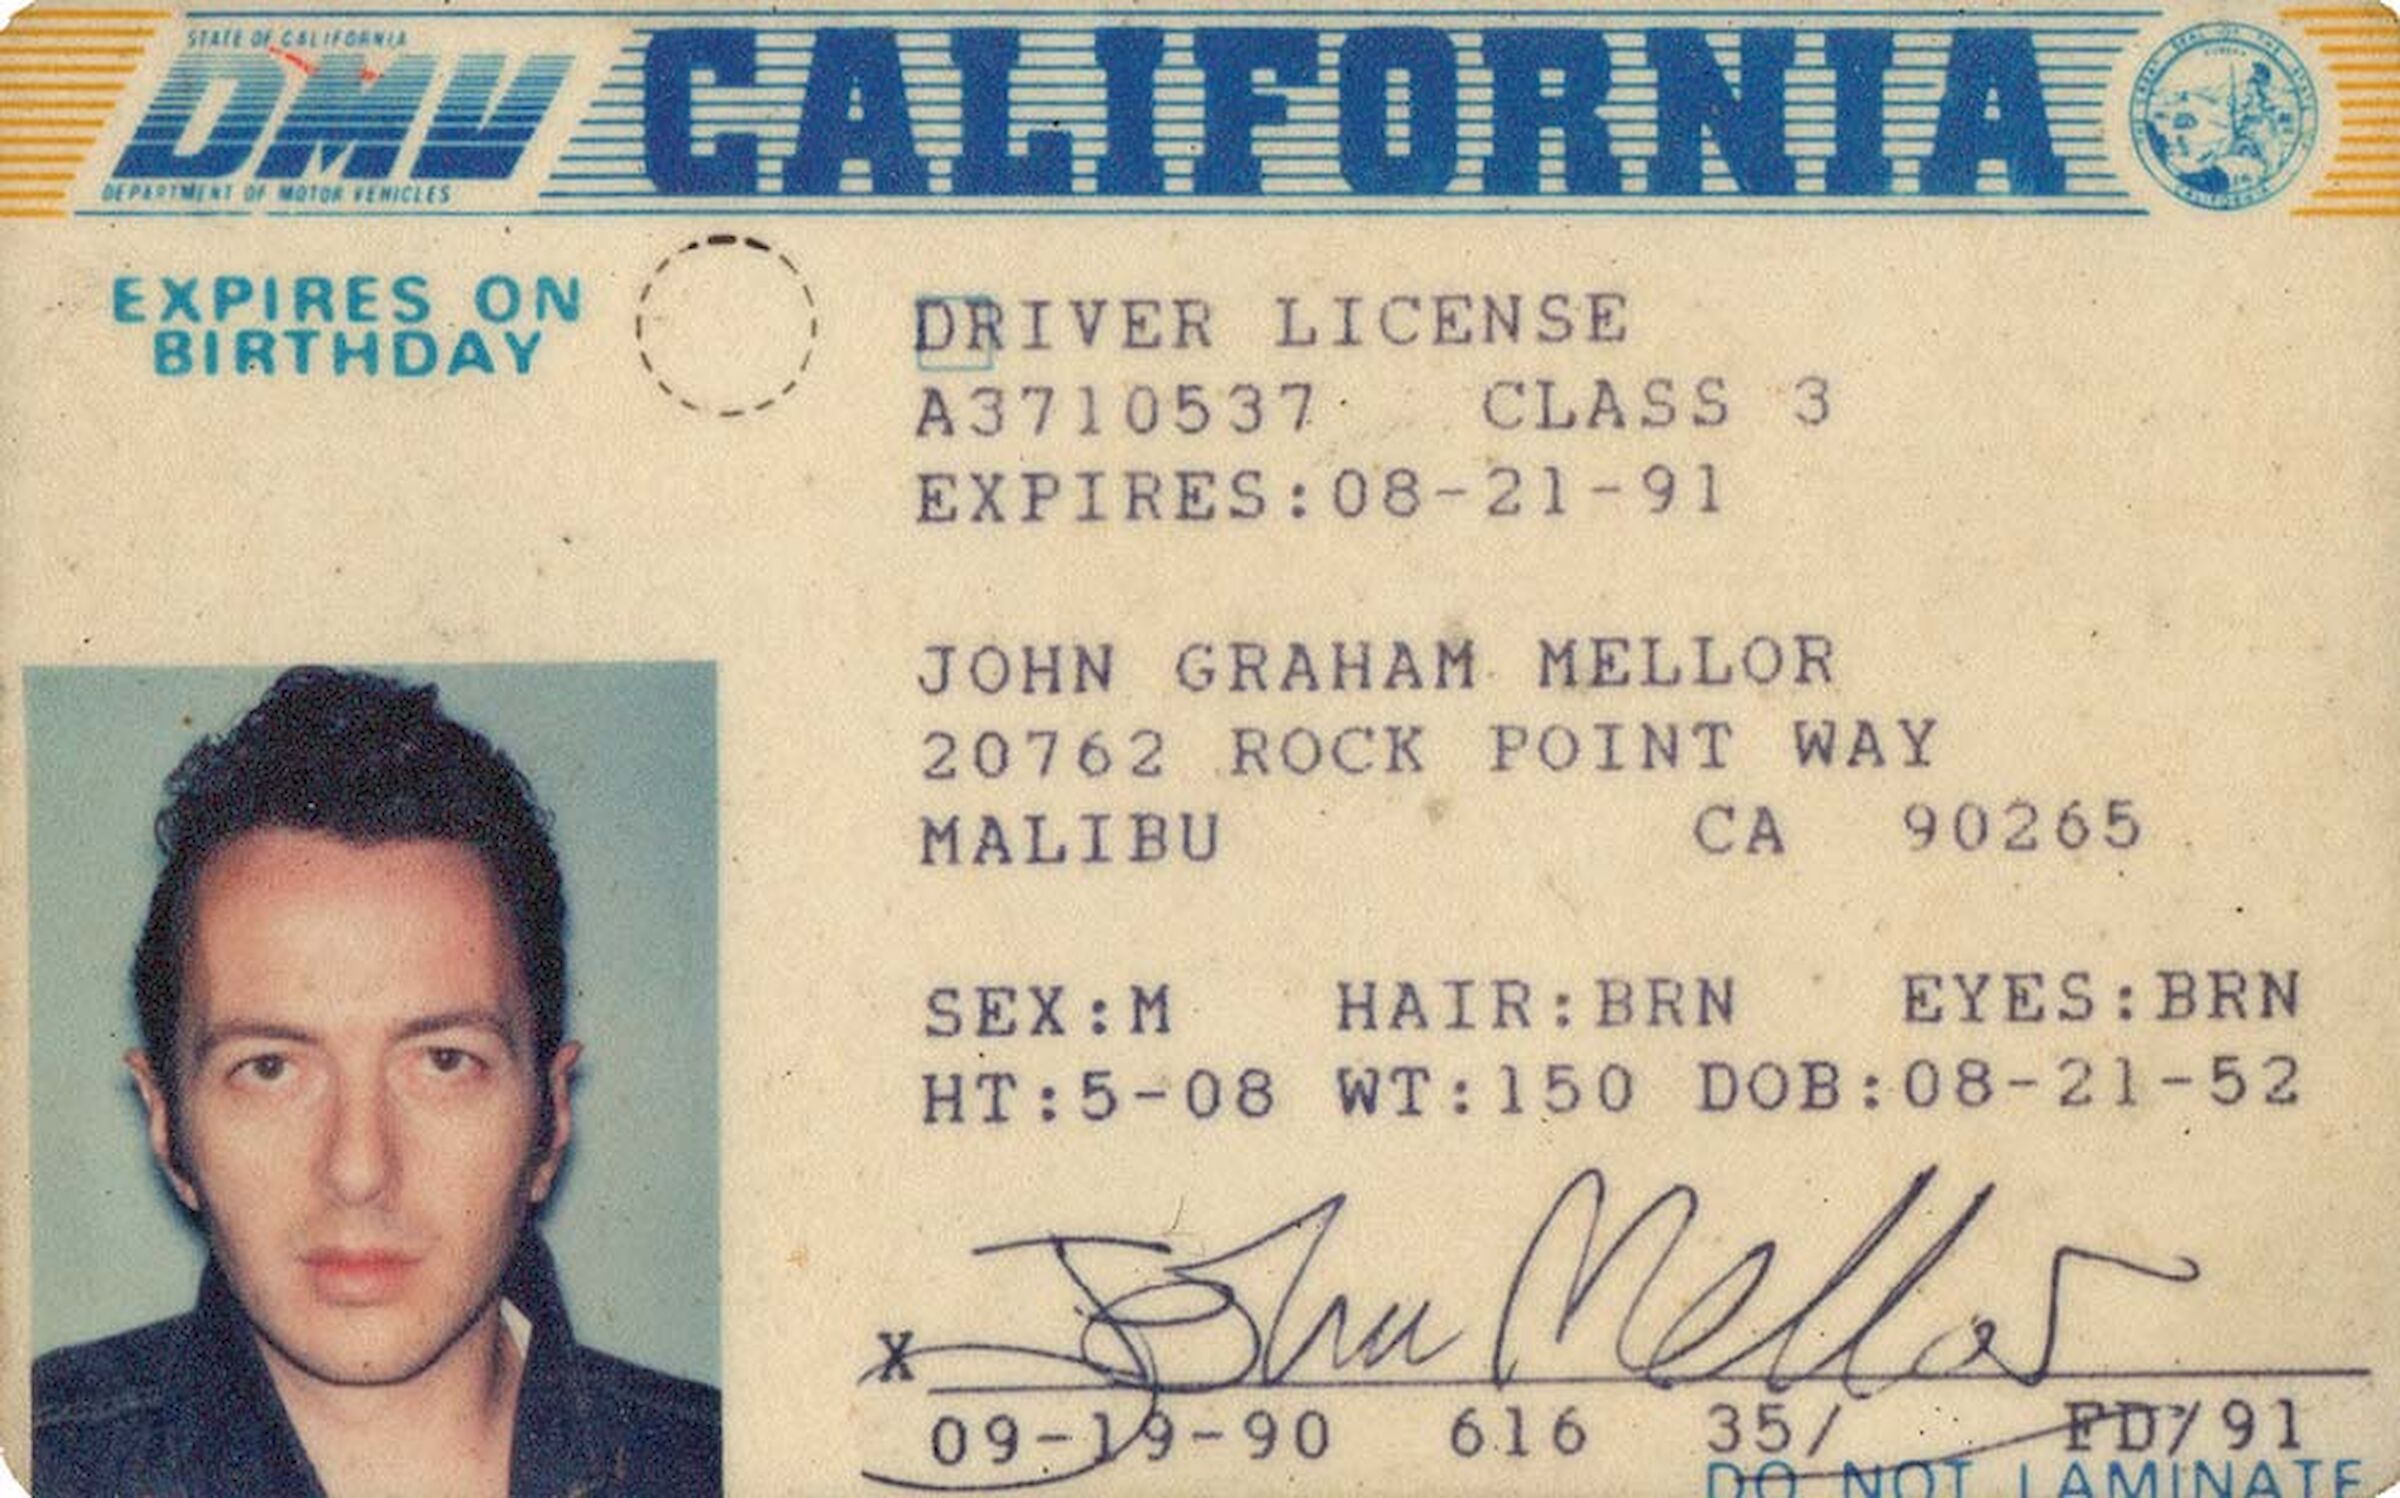 A laminated replica of Joe's California driver license.